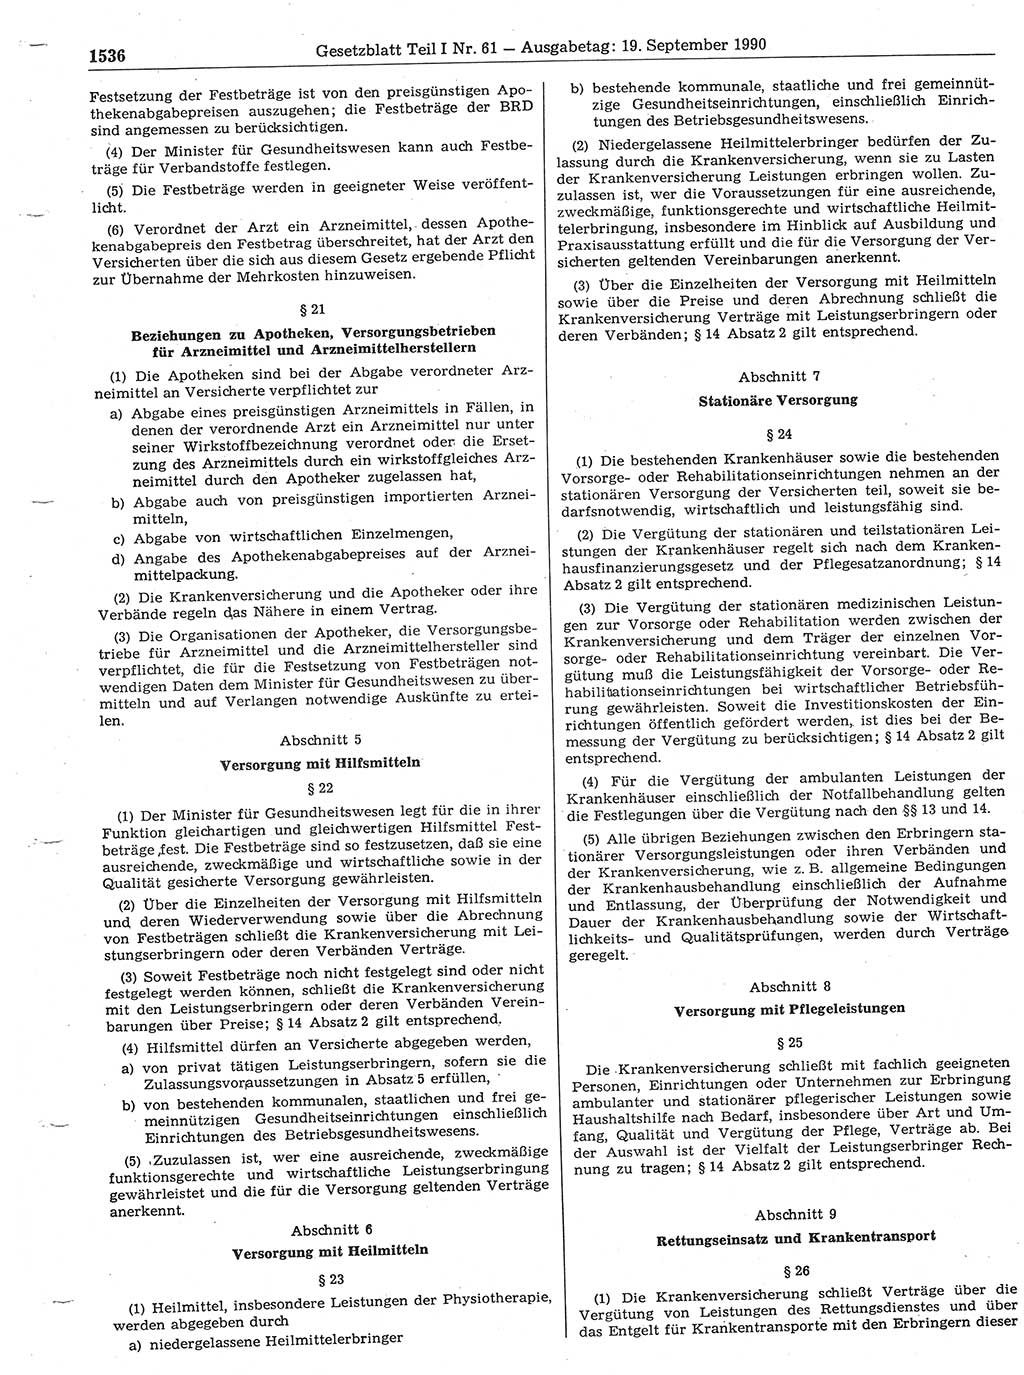 Gesetzblatt (GBl.) der Deutschen Demokratischen Republik (DDR) Teil Ⅰ 1990, Seite 1536 (GBl. DDR Ⅰ 1990, S. 1536)